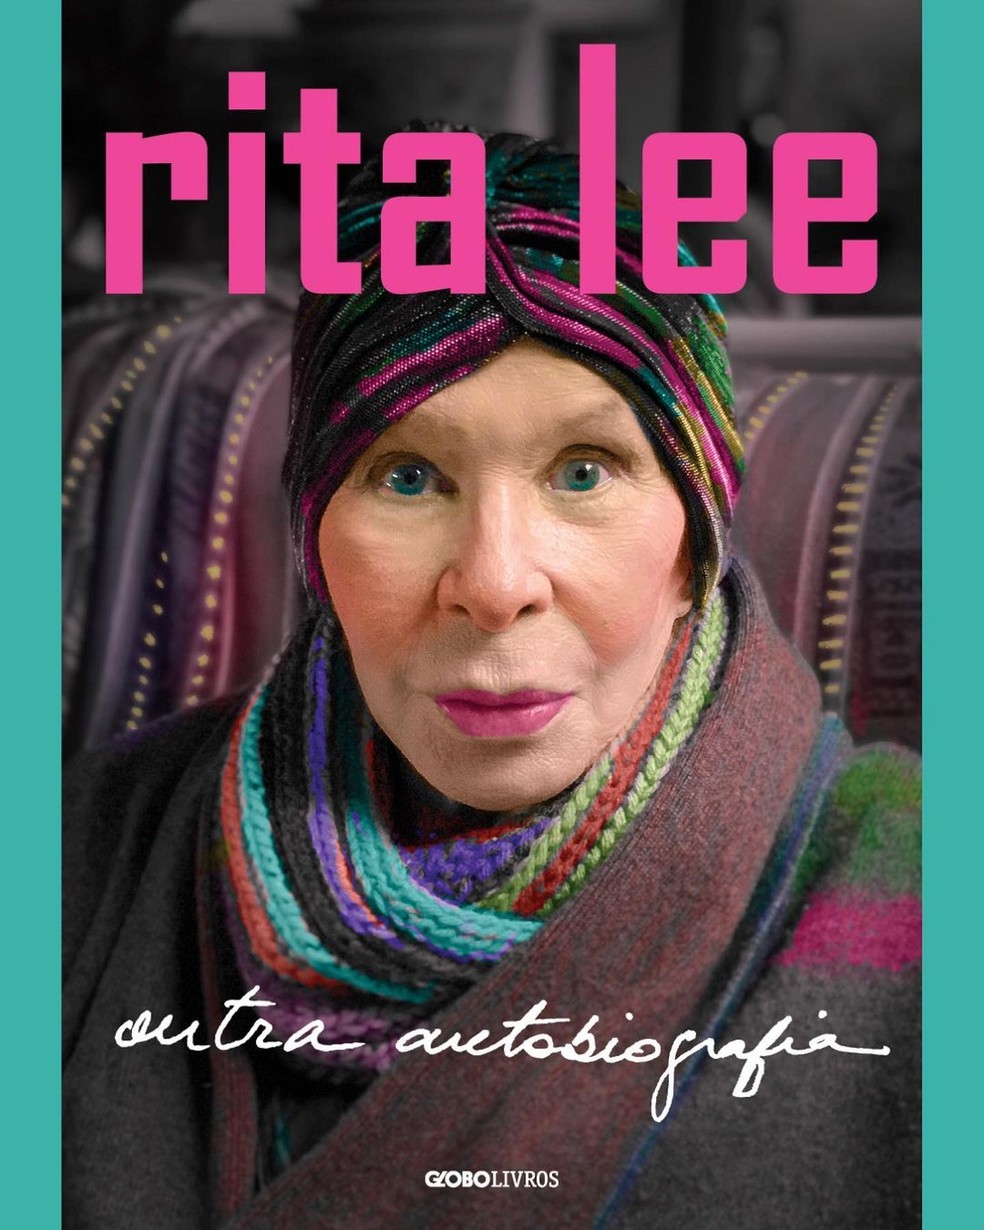 Livro "Rita Lee: outra autobiografia" tem data de lançamento marcada em 22 de maio de 2023 — Foto: Instagram / Reprodução